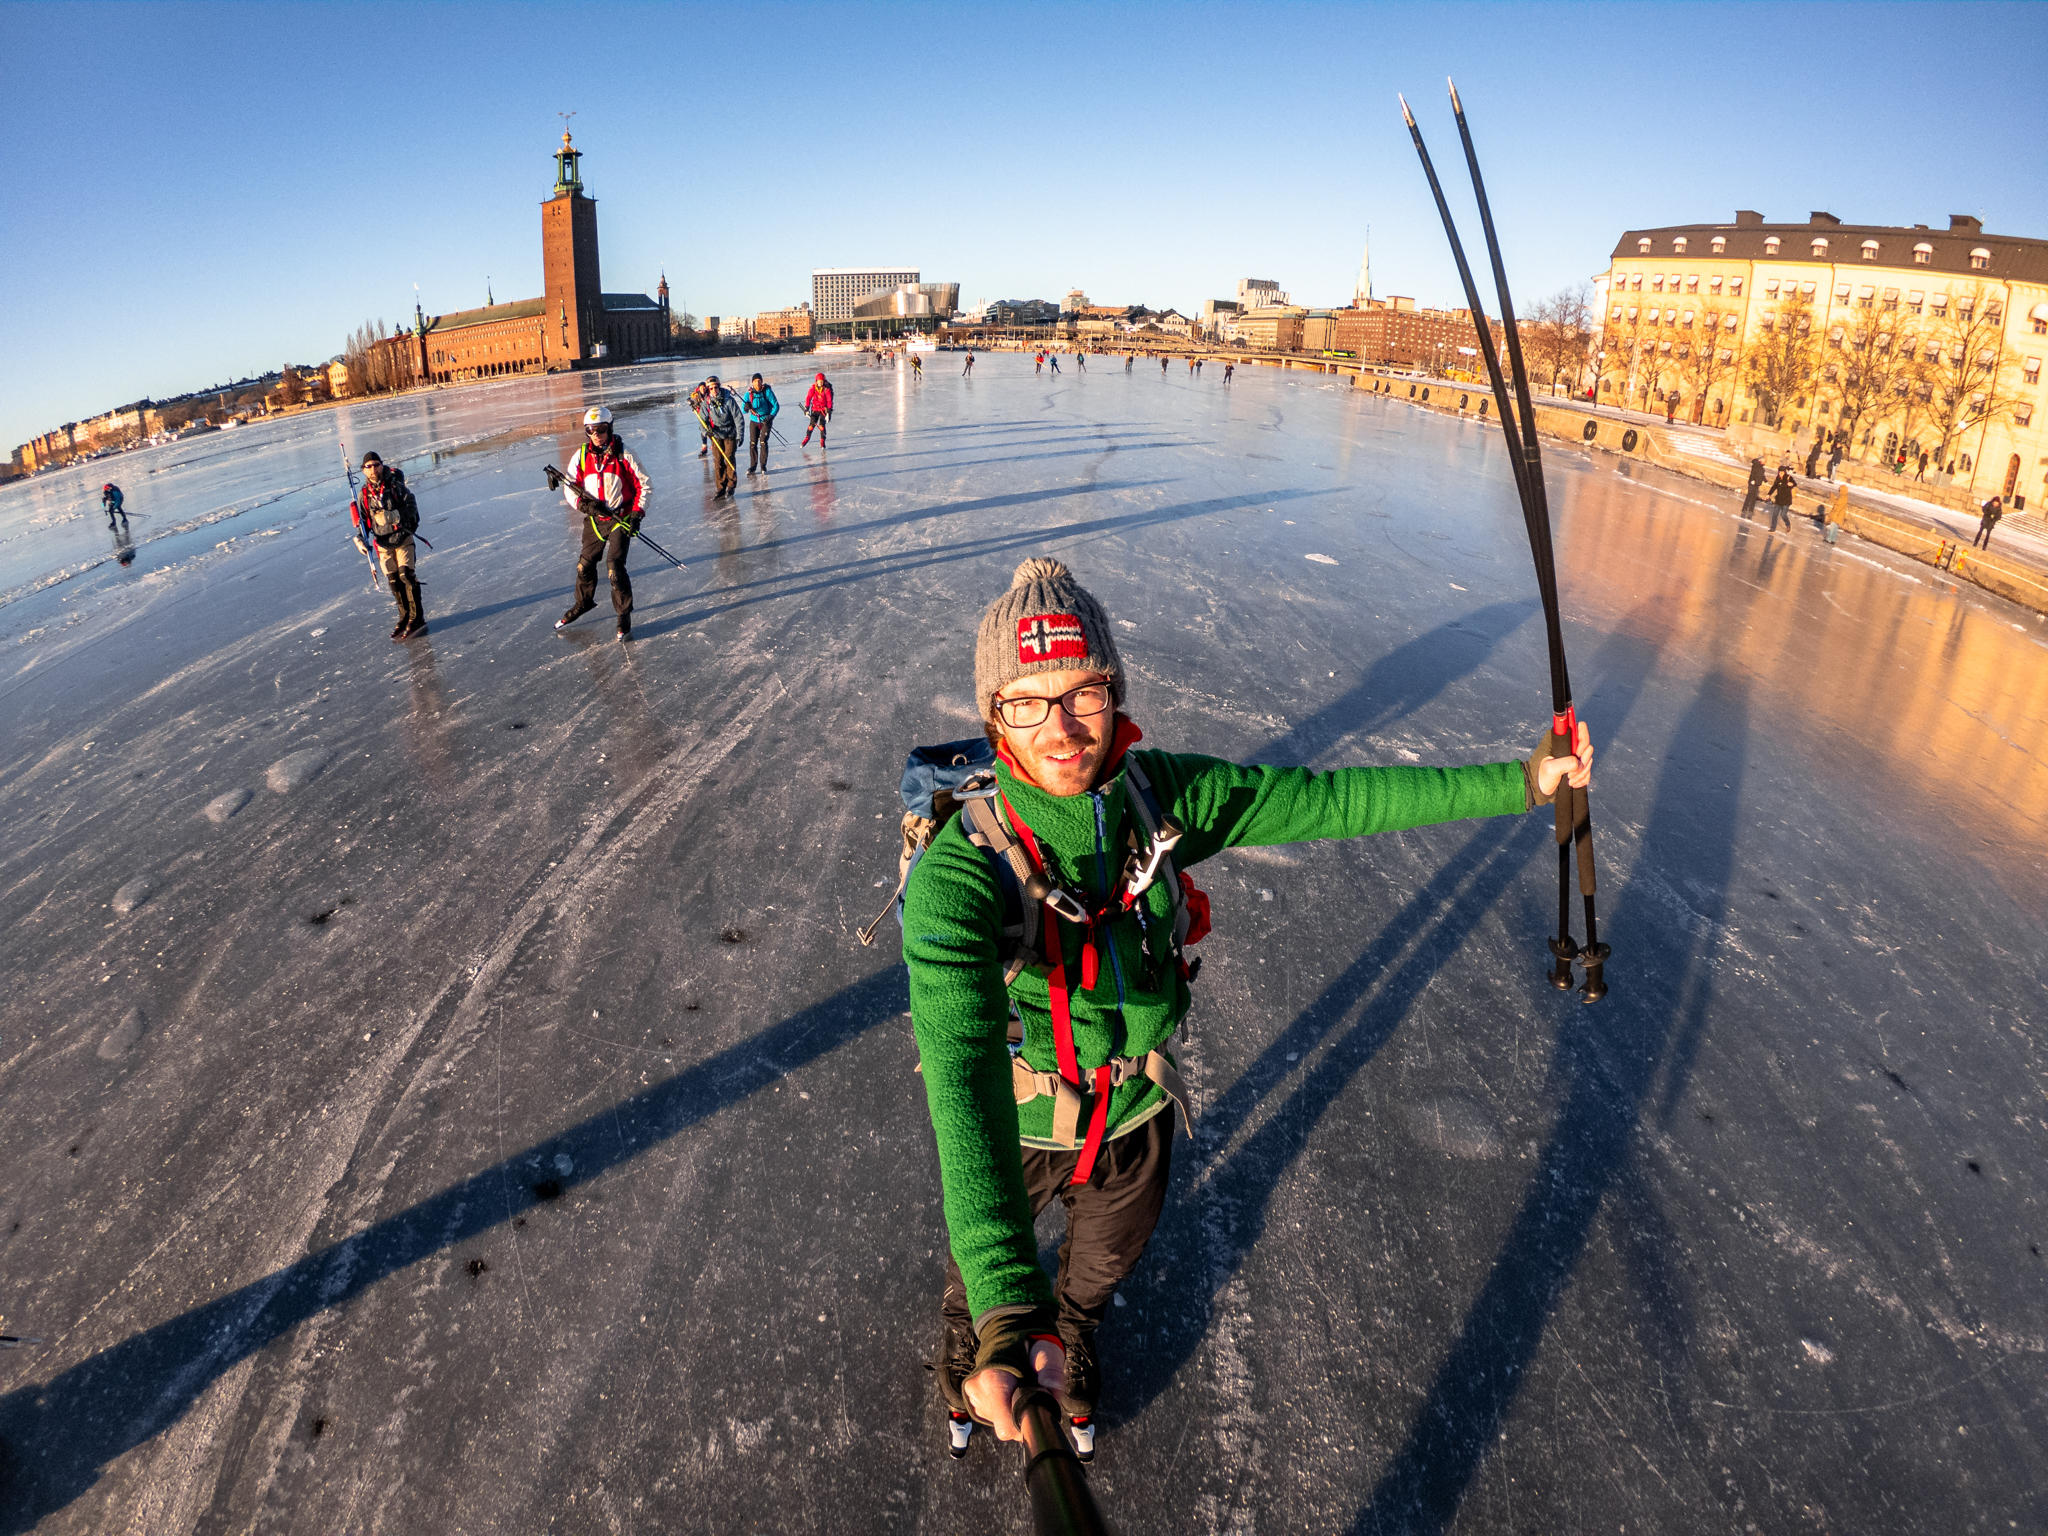 Skating in central Stockholm, Sweden